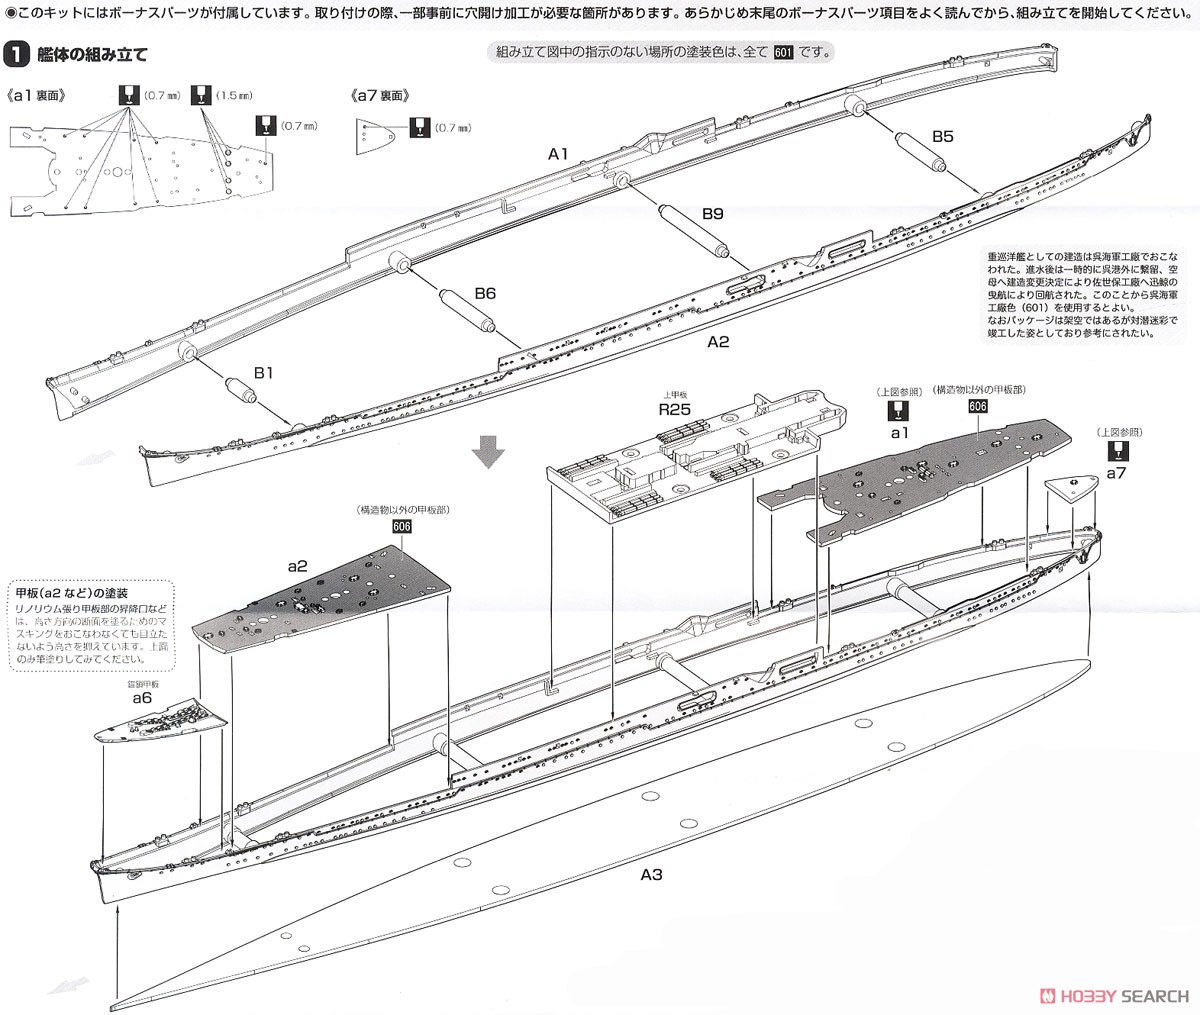 日本海軍重巡洋艦 伊吹 (プラモデル) 設計図1